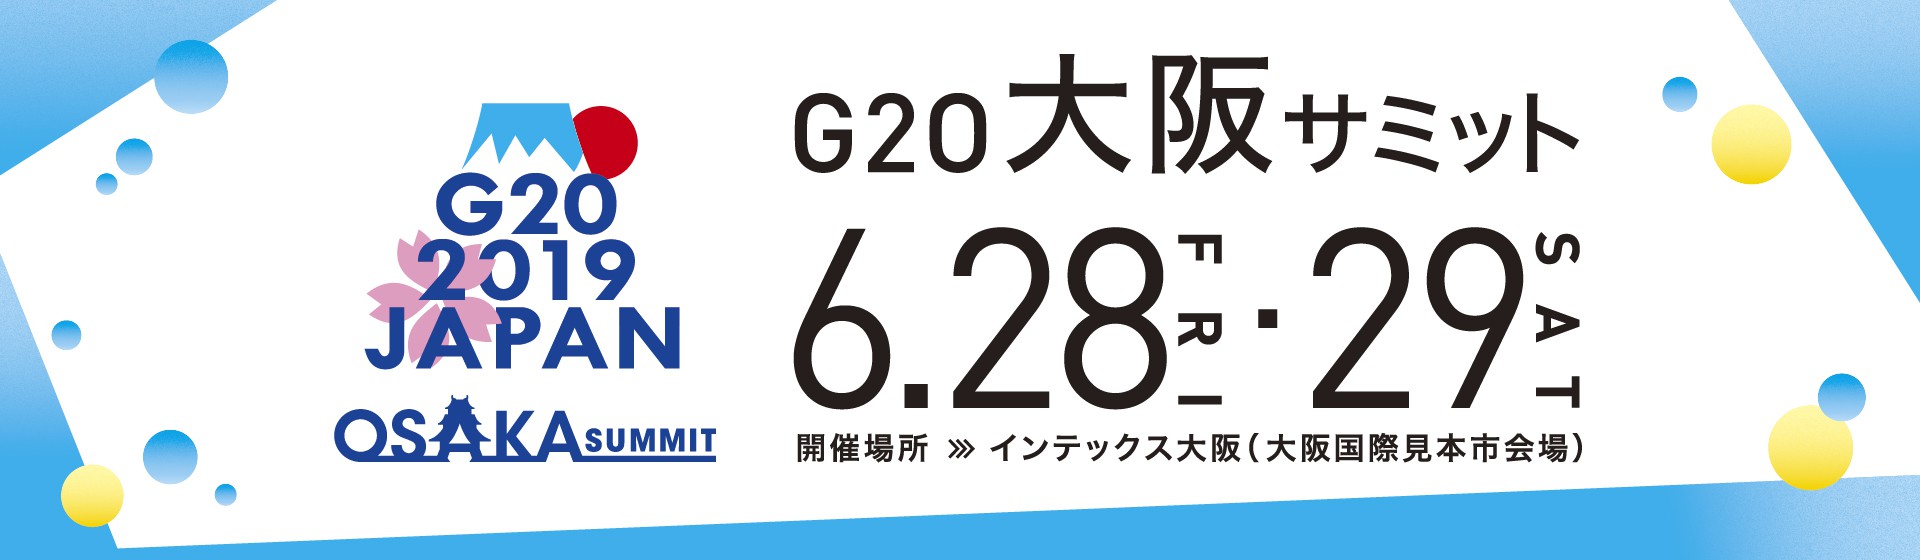 G20大阪サミット開催に伴う交通規制による配送への影響について